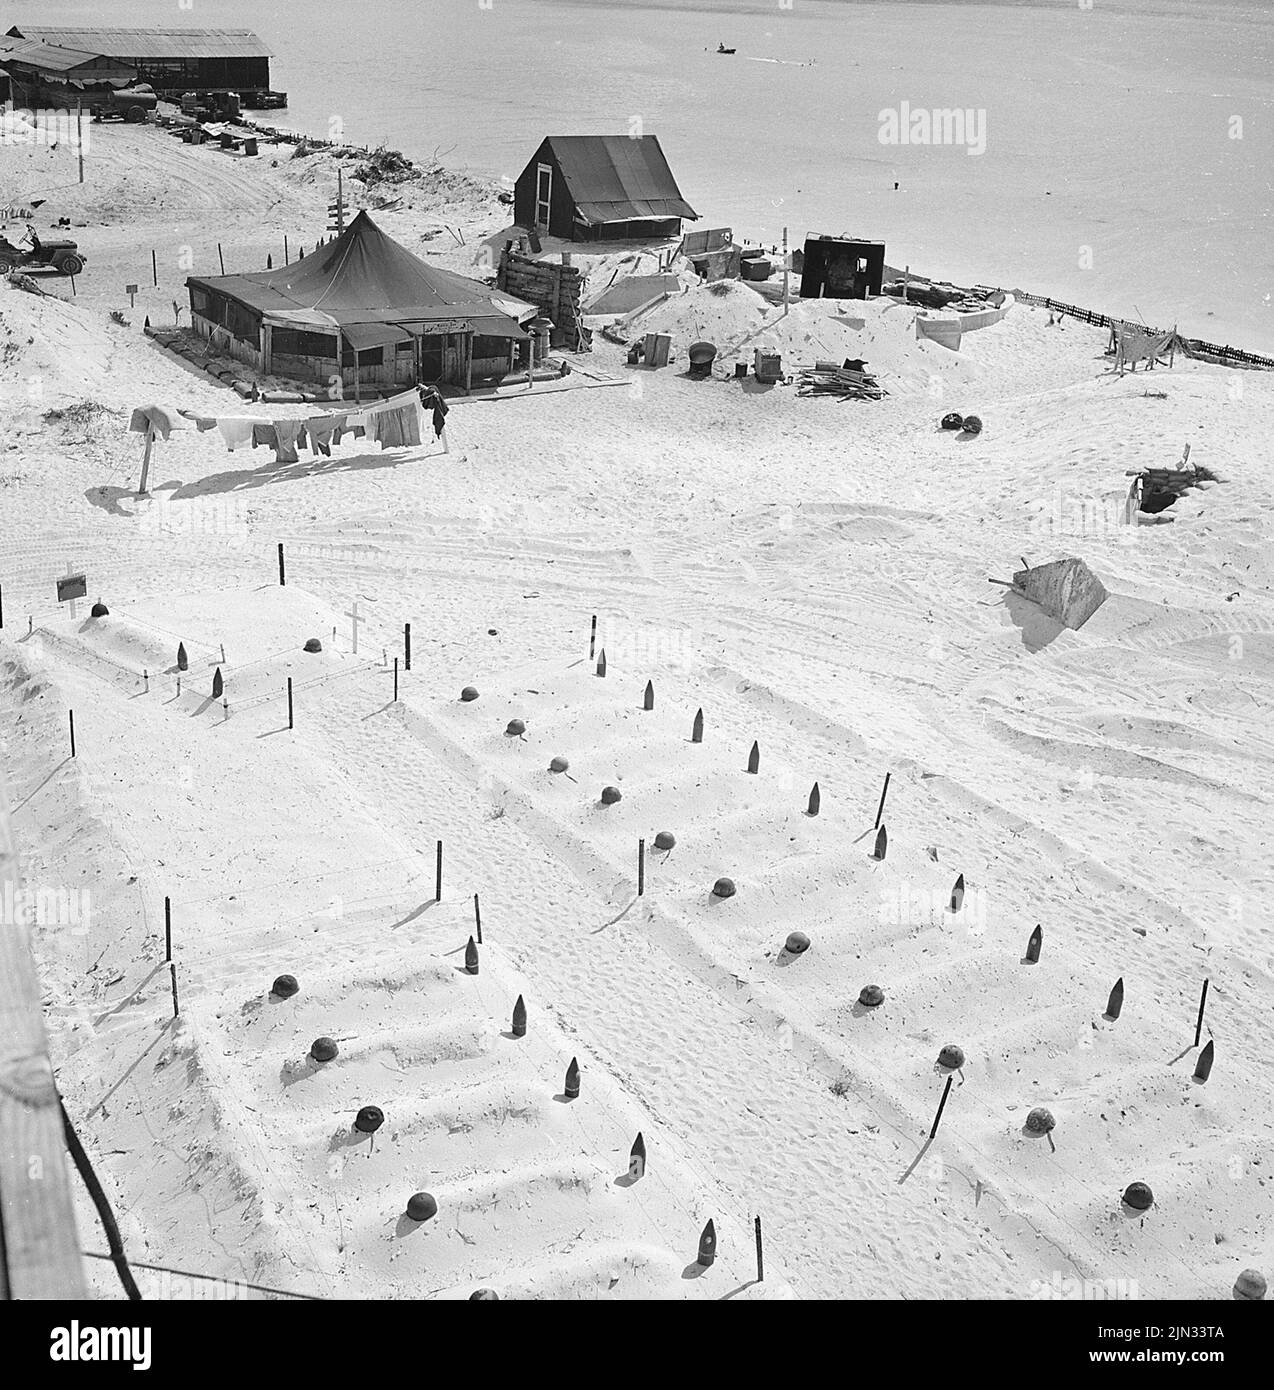 Leere Helme und ausgewendete Artilleriebranchen markieren die Gräber von Marineinfanatisten, die im März 1944 in Tarawa fielen. Die Landungen auf Tarawa waren Teil der US-Offensive gegen die Pazifikinseln, die Japan vor der Vorbereitung eines Angriffs auf das japanische Festland durchgeführt hatte. Stockfoto